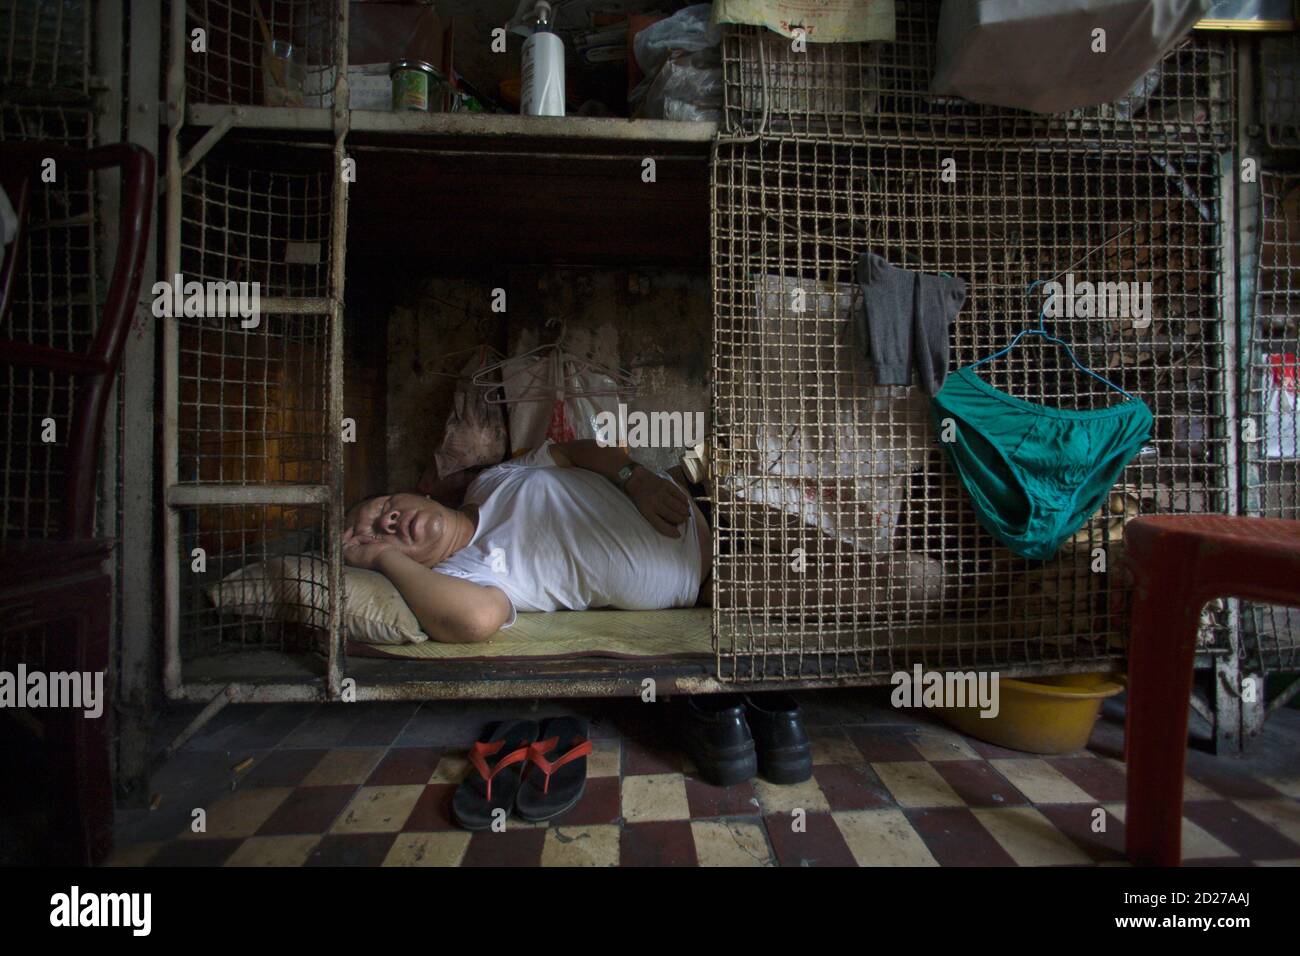 Yan Chi-keung duerme en una pequeña jaula en el distrito Tai Kok Tsui de Hong  Kong el 16 de julio de 2008. En distritos más antiguos como Tai Kok Tsui,  cientos de